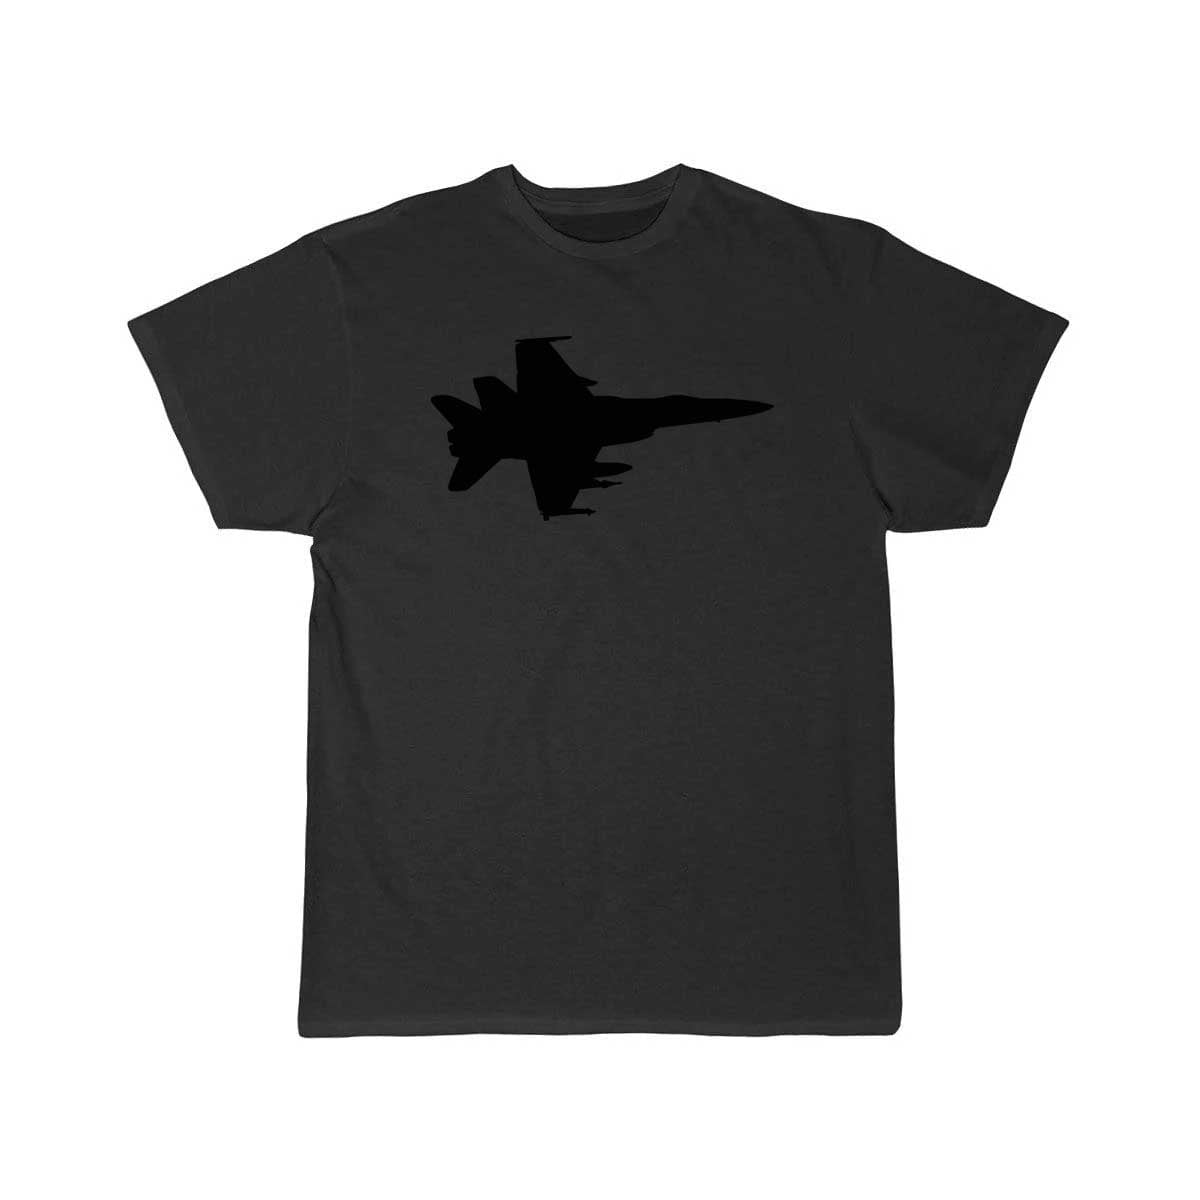 Airplane Fighter Jet Pilot Gift Idea T Shirt THE AV8R